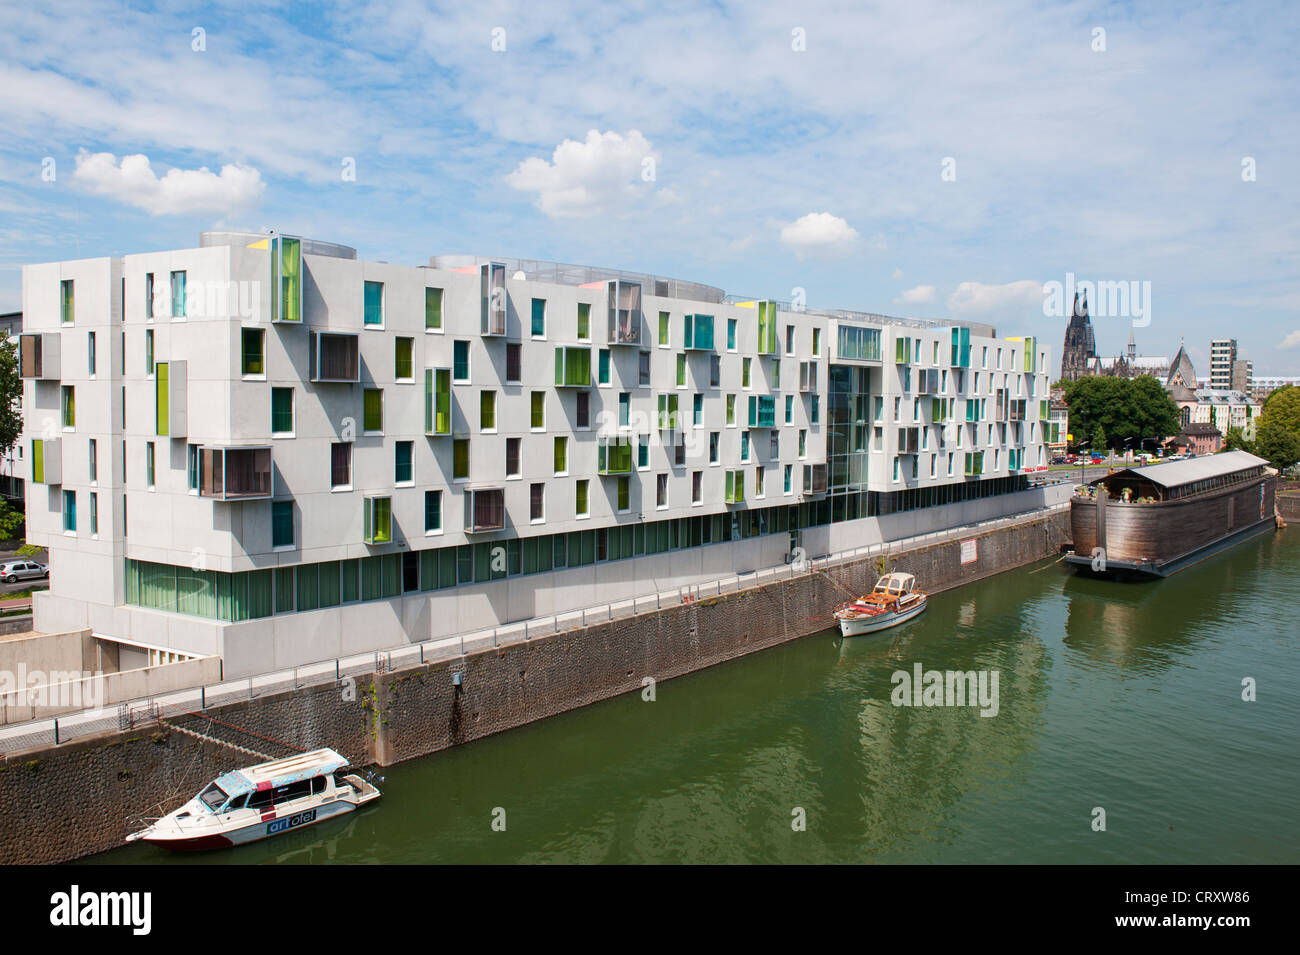 Esterno del modern art'otel con architettura inusuale nel quartiere Rheinauhafen Colonia Germania Foto Stock